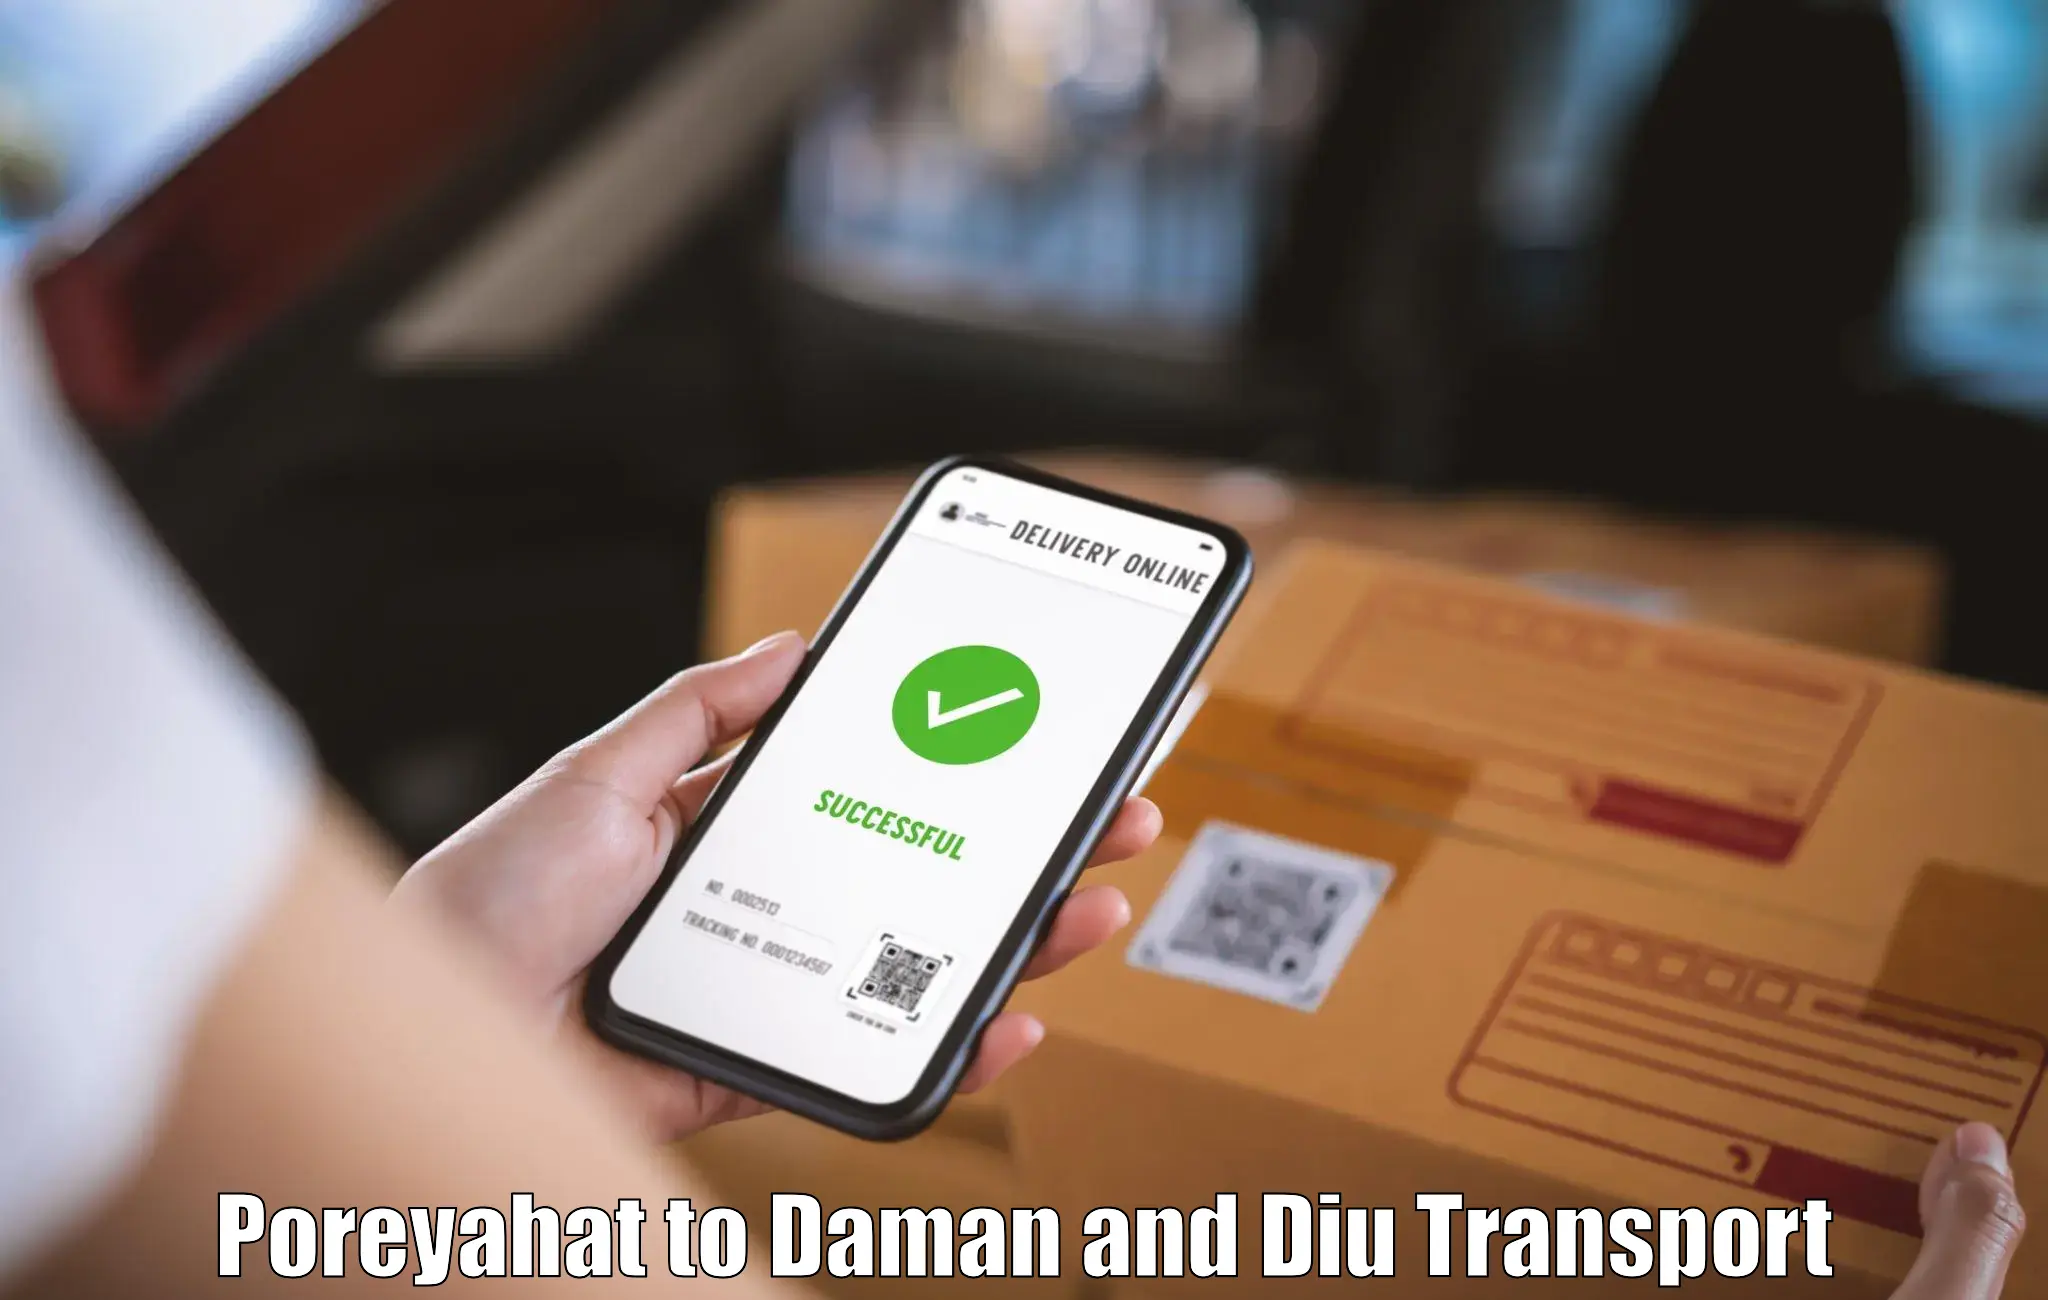 Transport in sharing Poreyahat to Daman